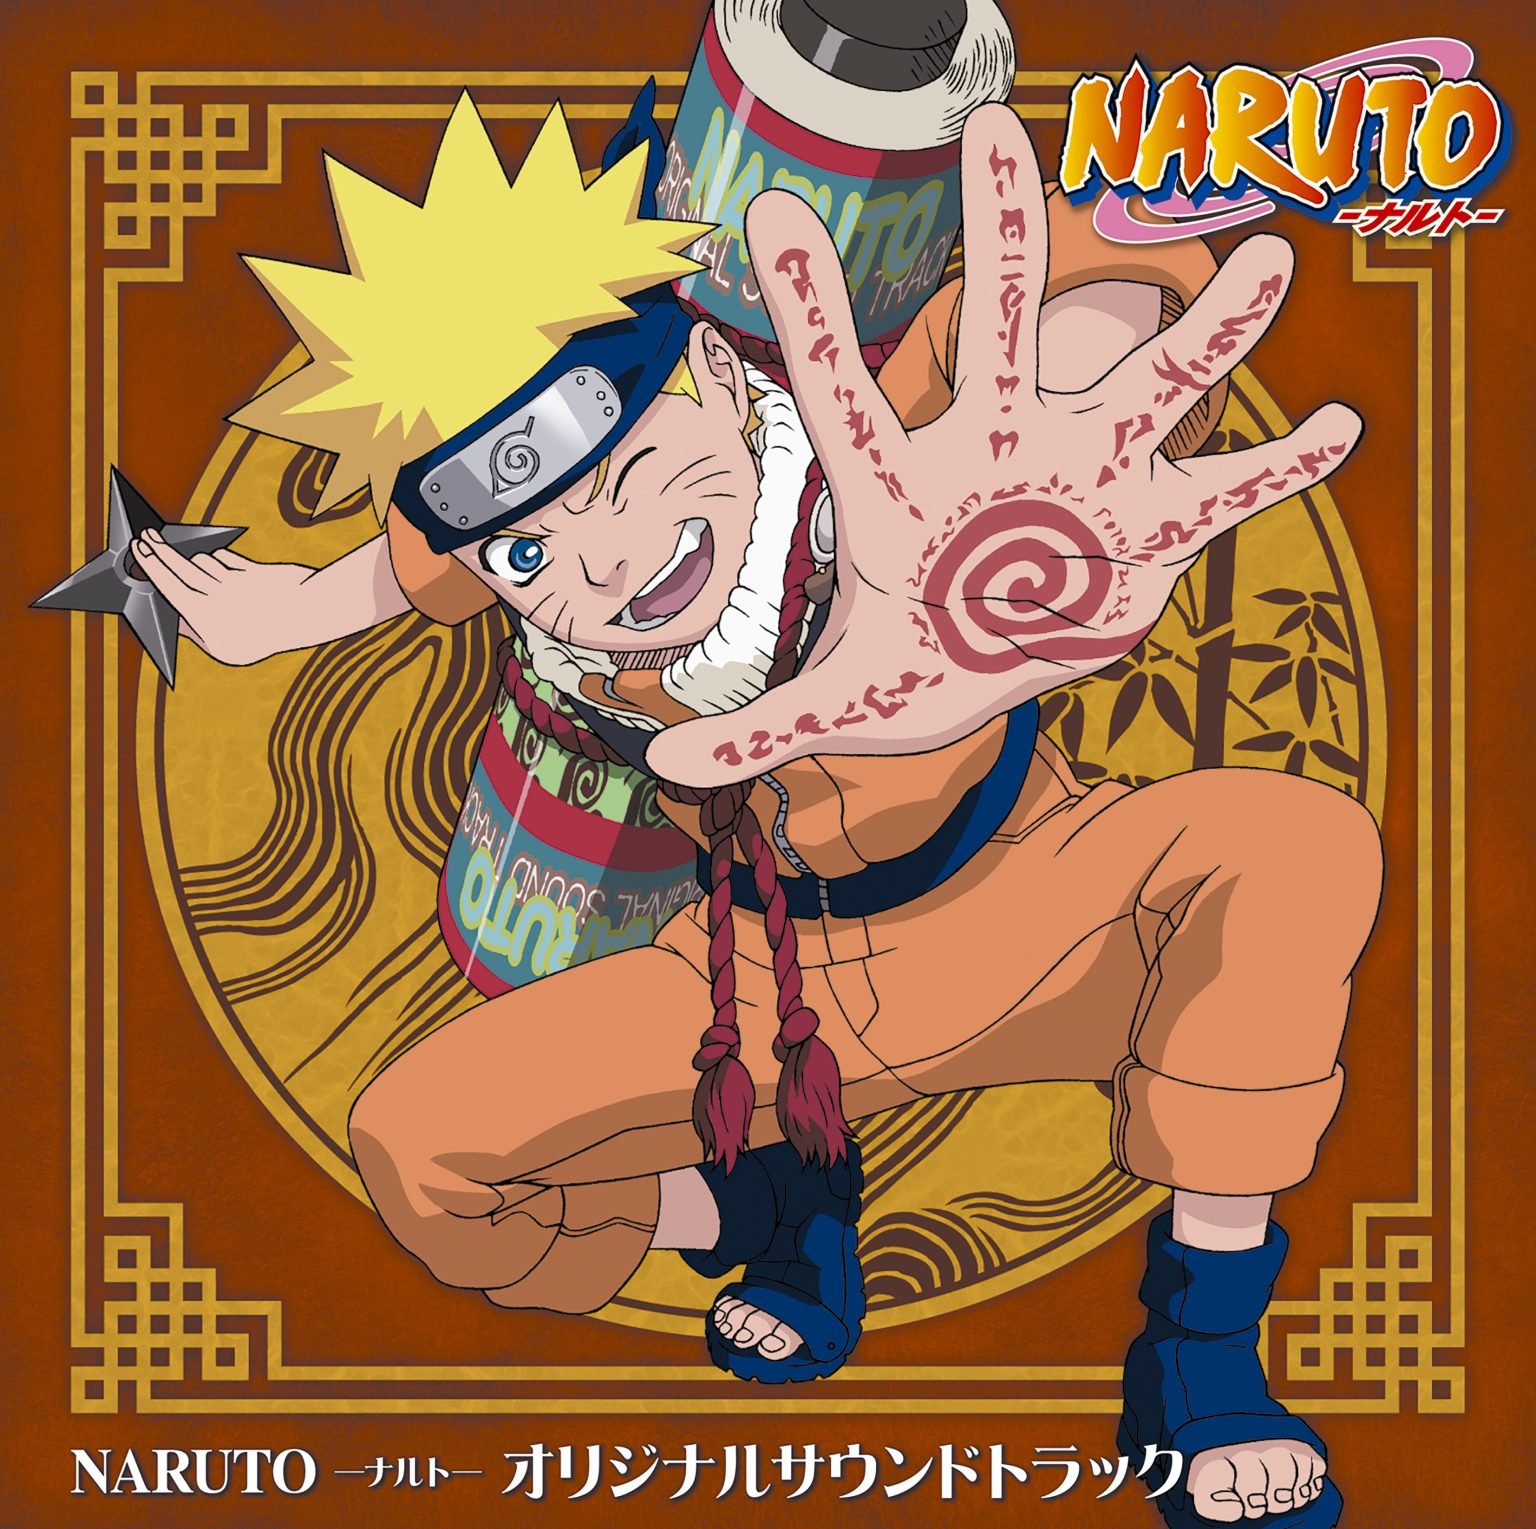 Milan Records annonce la sortie numérique des musiques de Naruto